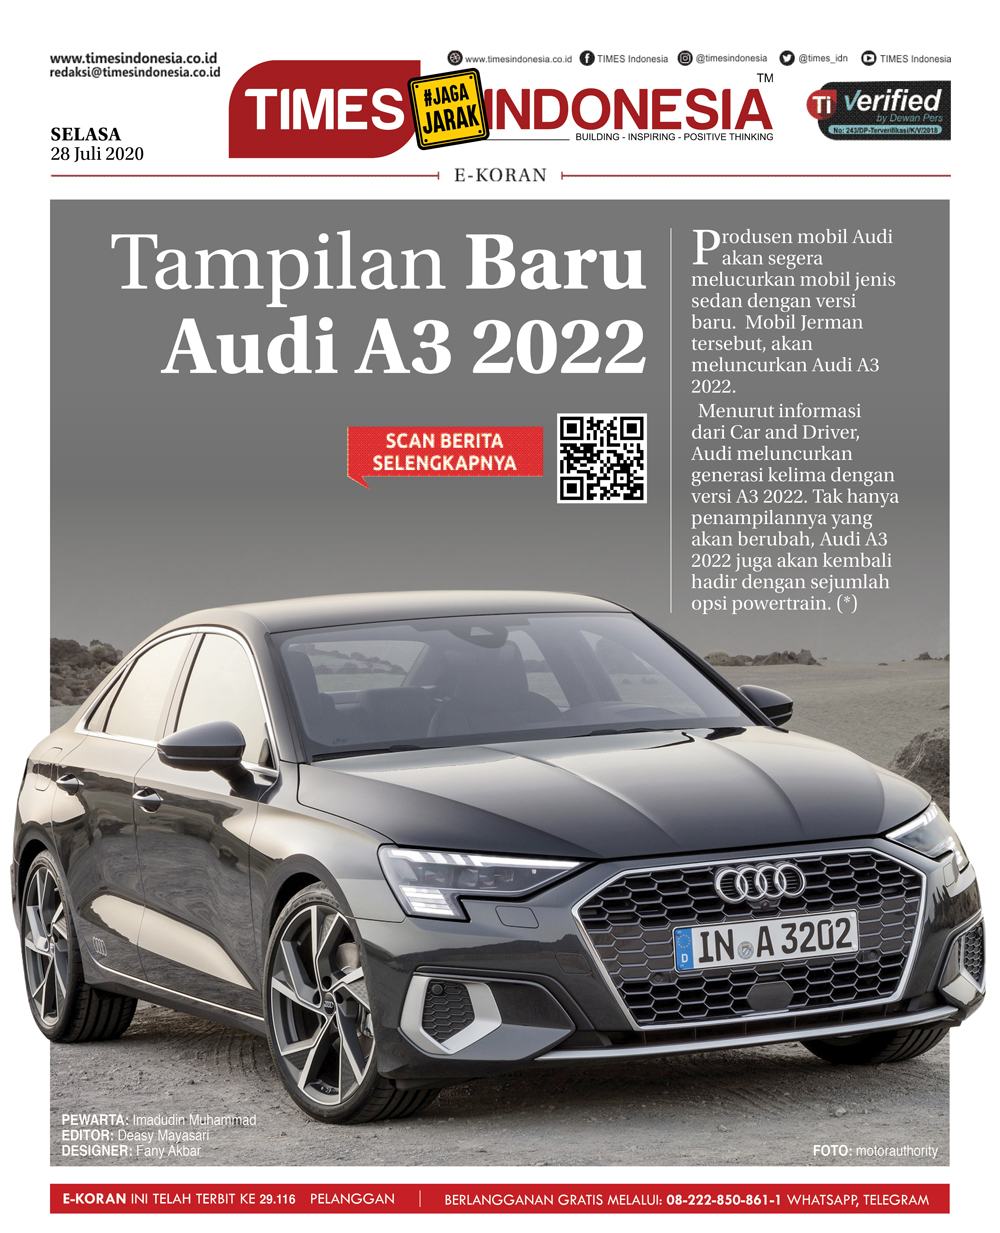 Edisi-Selasa-28-juli-2020-Audi-A3-20220.jpg